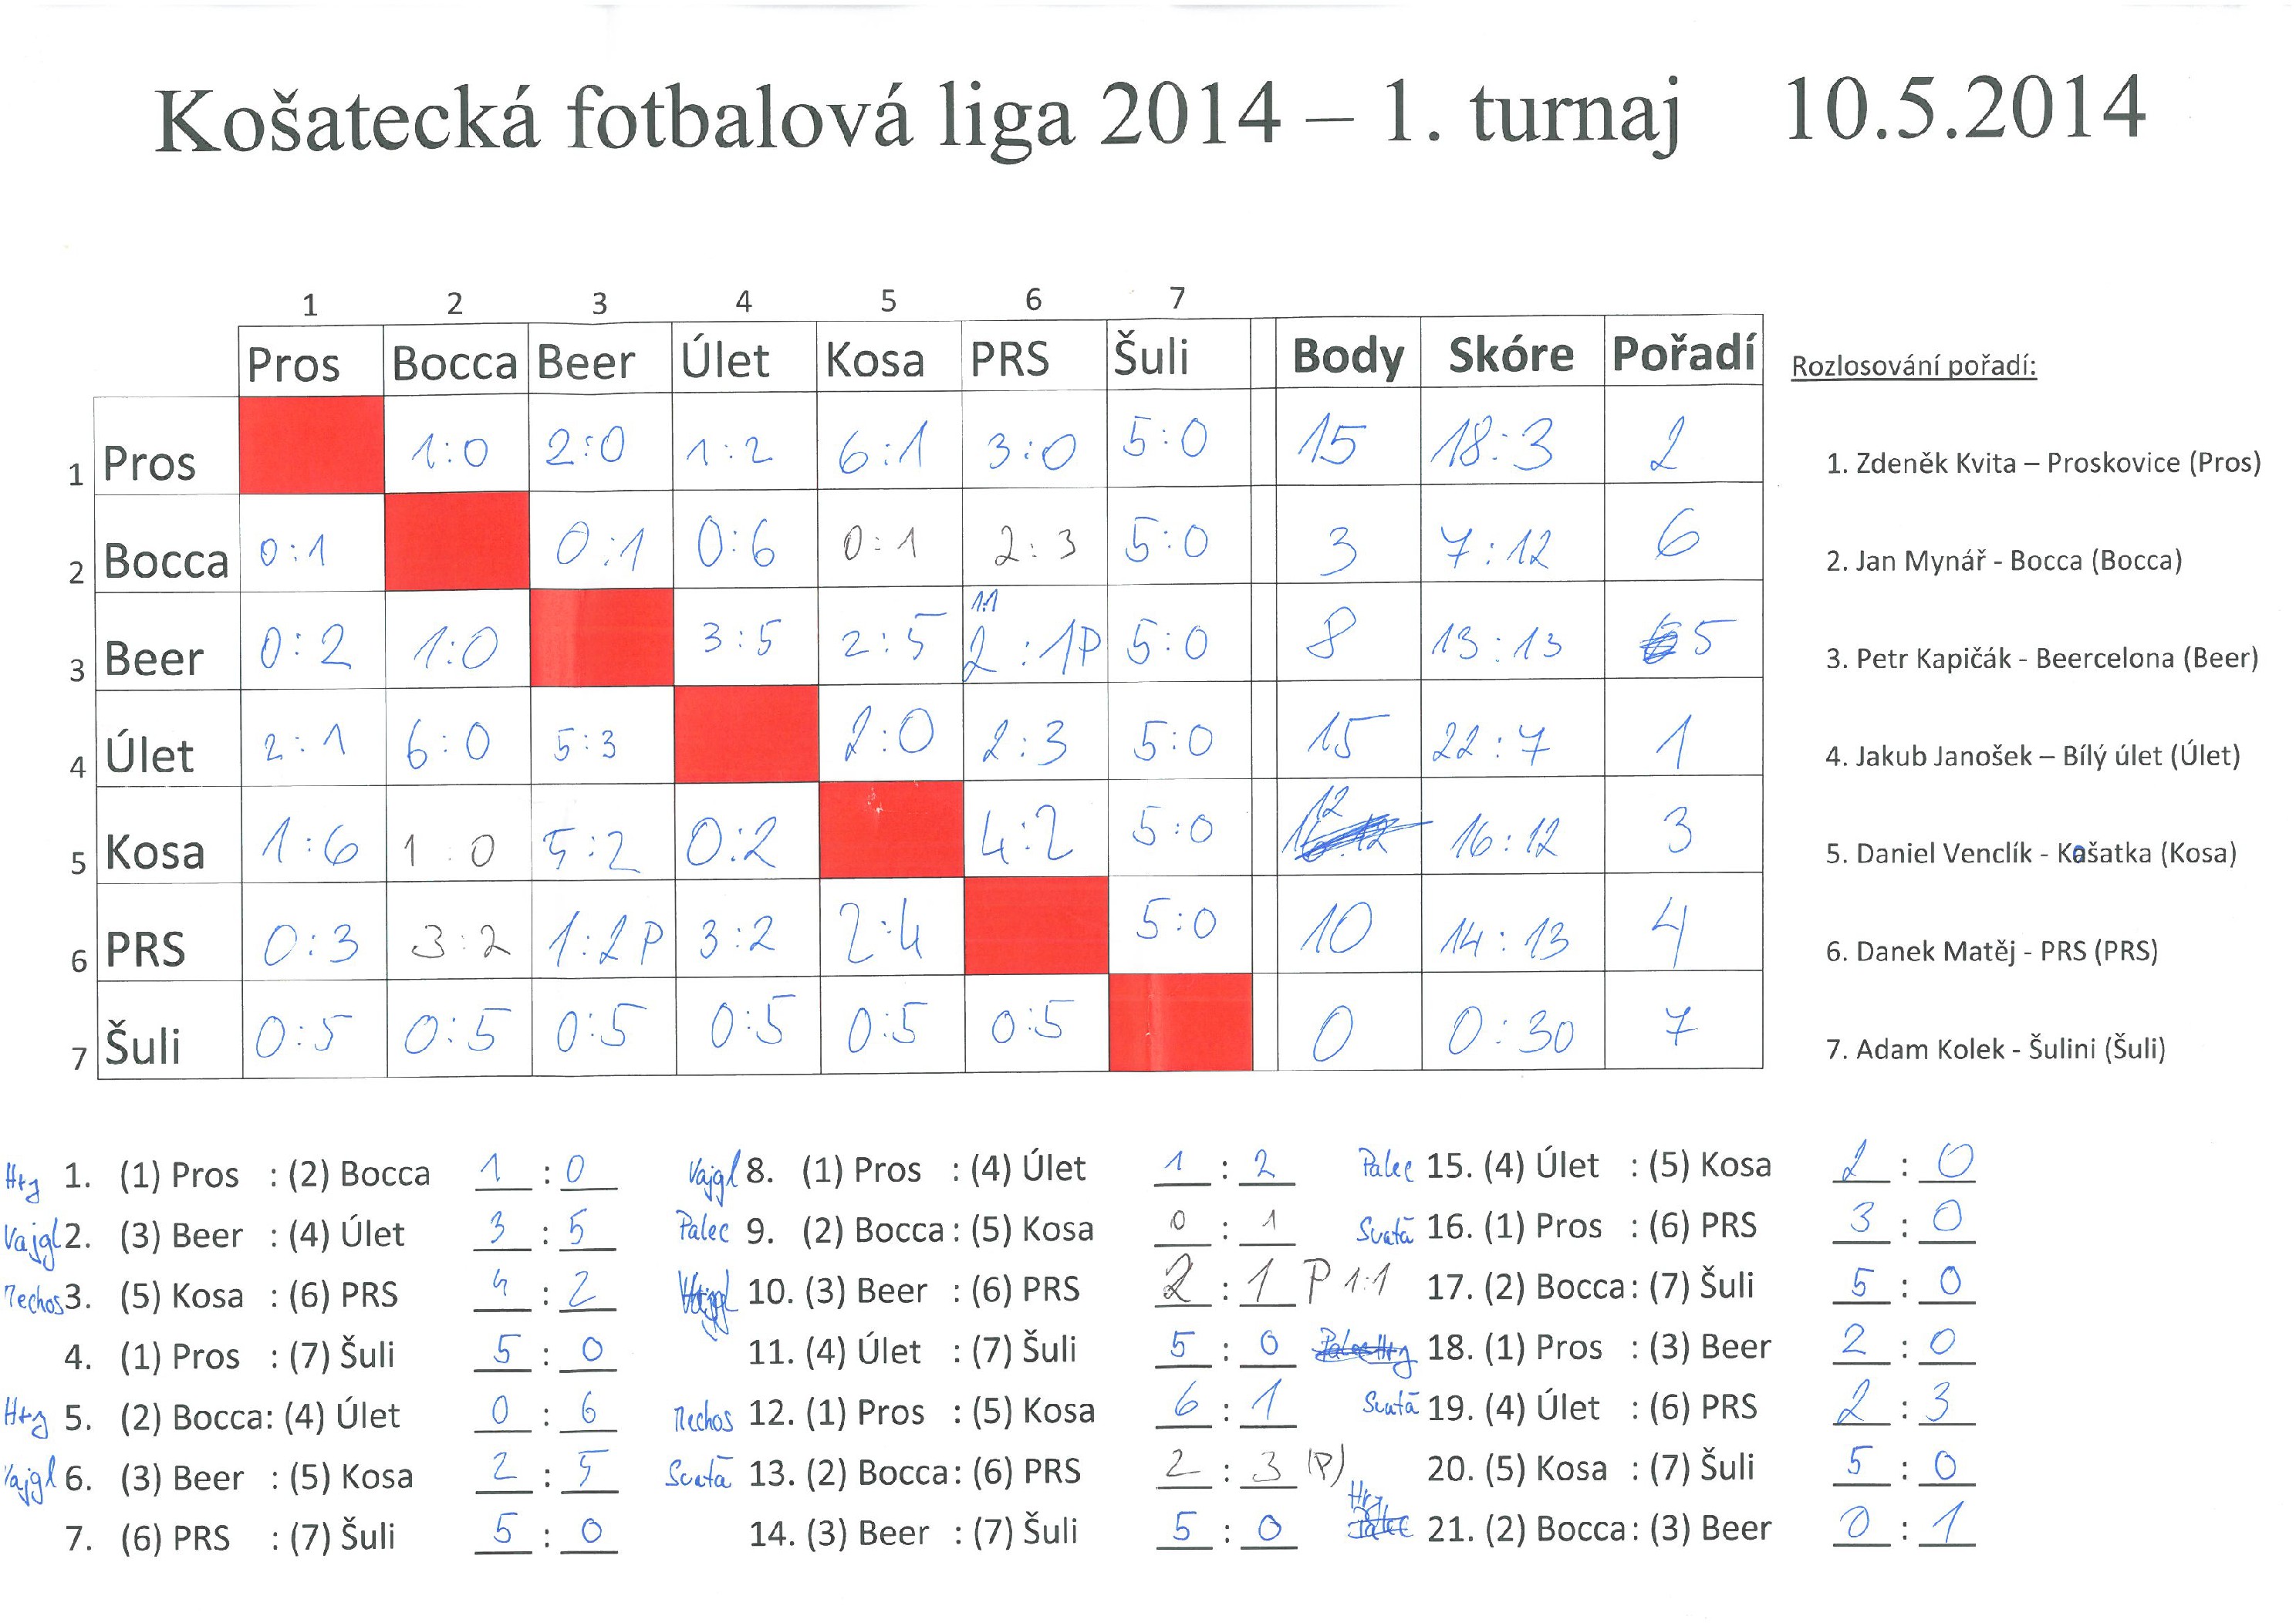 I. turnaj KFL 10.5.2014